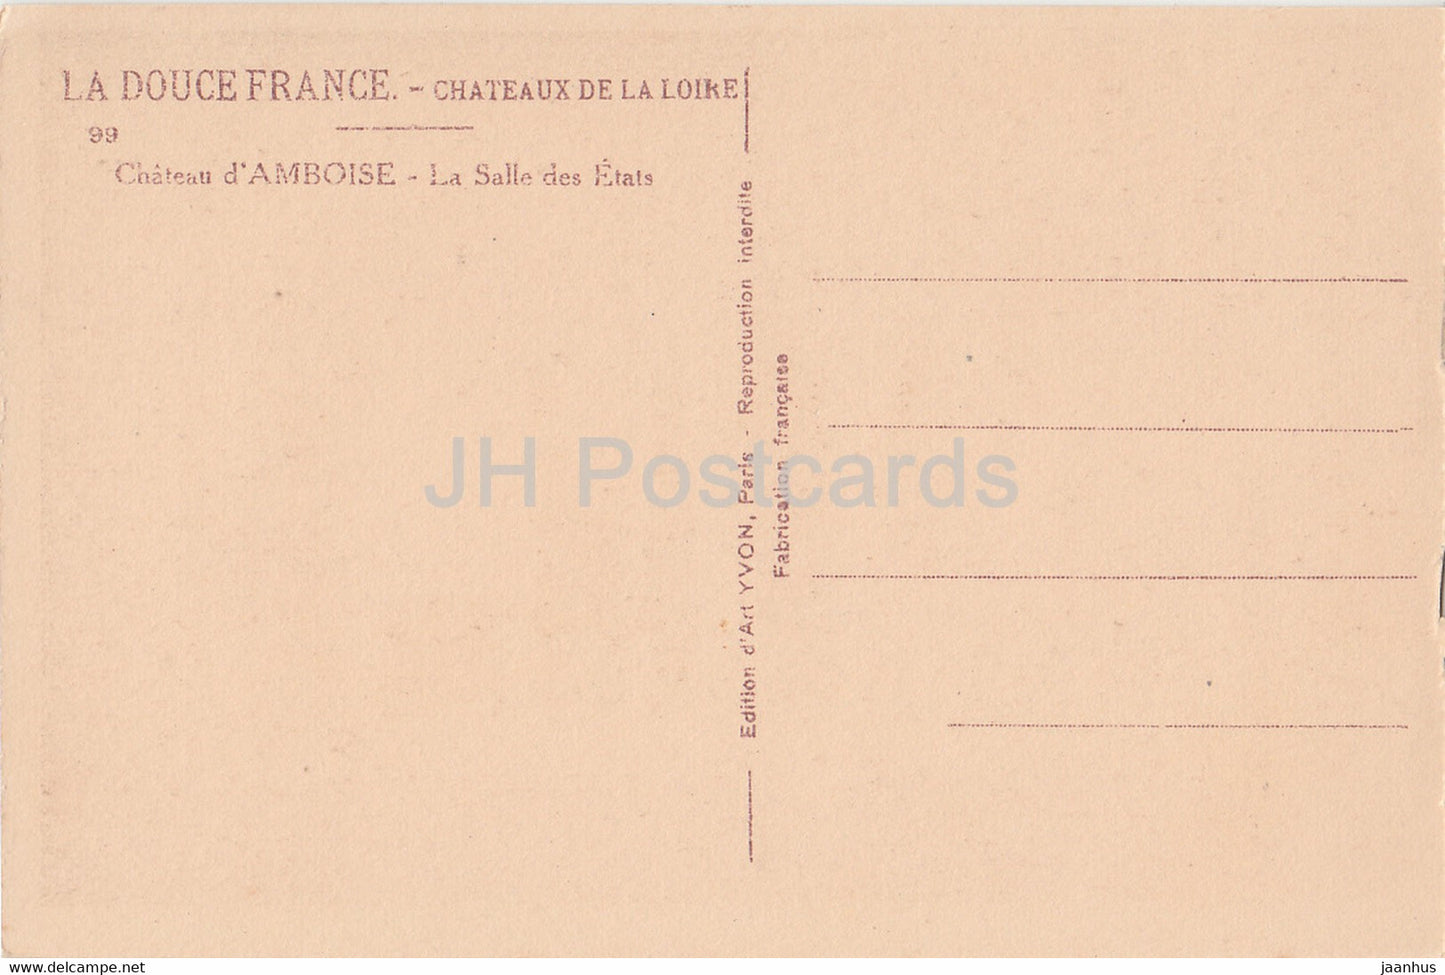 Château d'Amboise - La Salle des Etats - 99 - château - carte postale ancienne - France - inutilisée